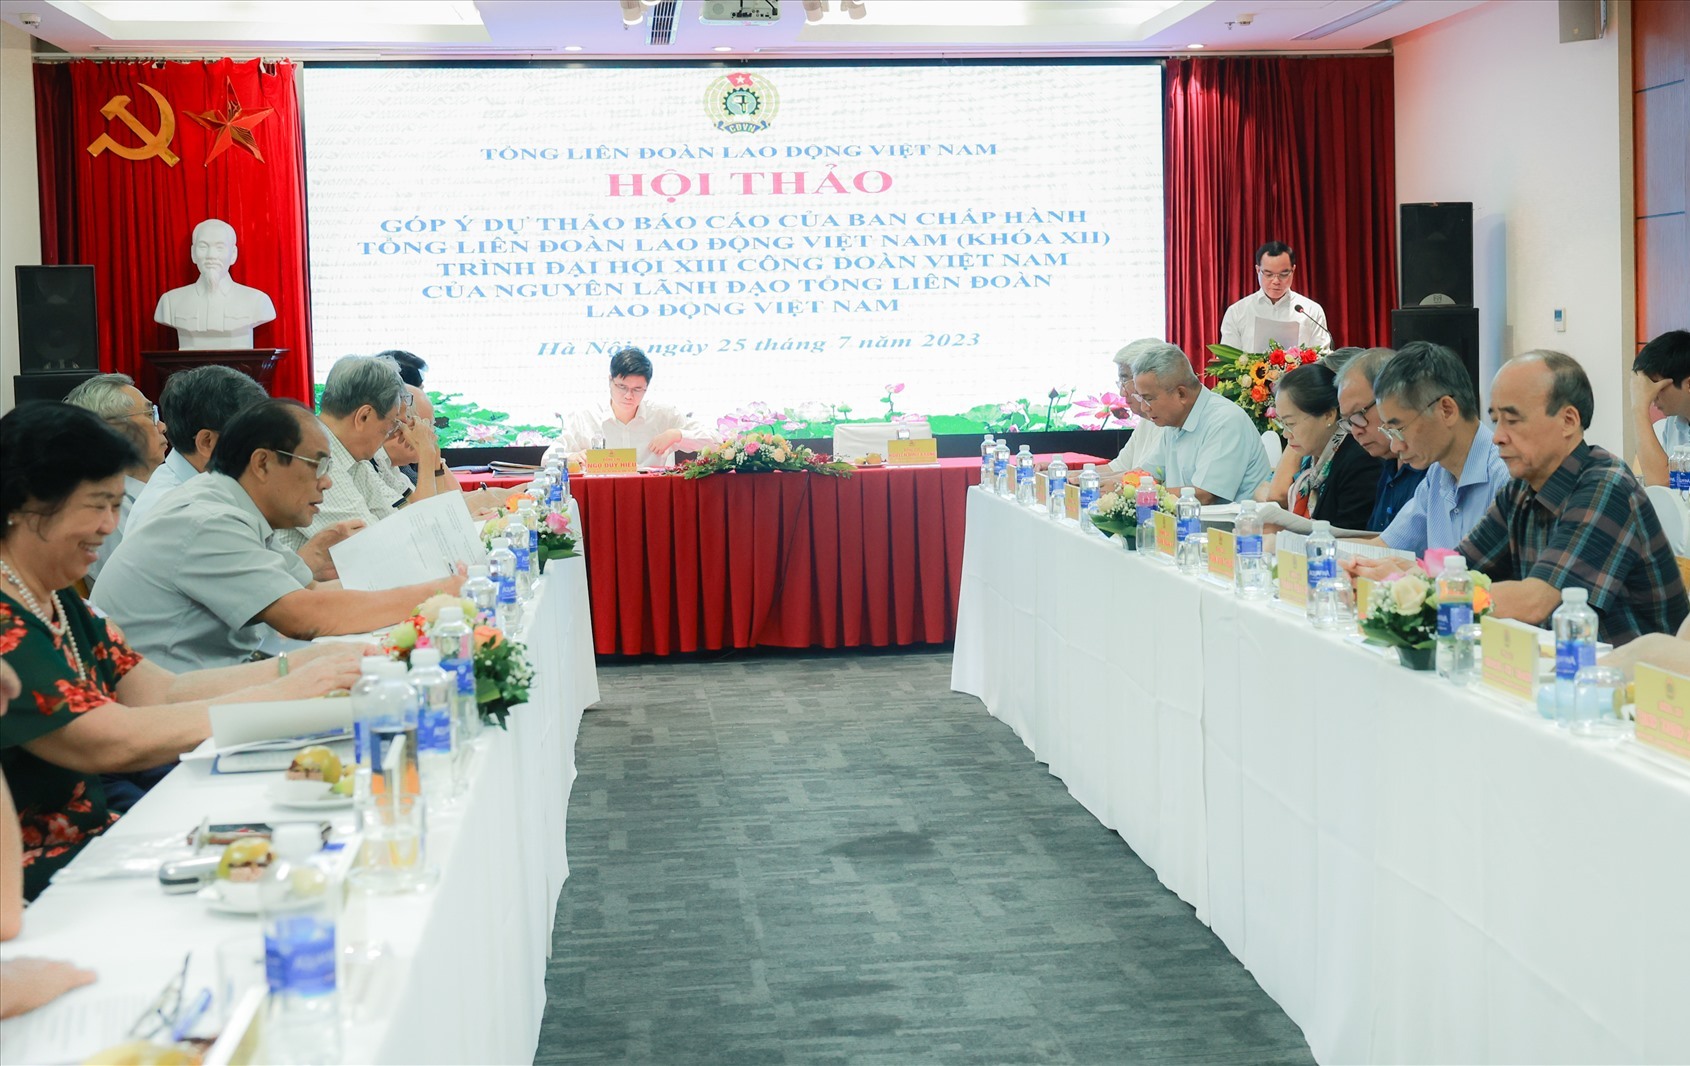 Hội thảo lấy ý kiến góp ý của nguyên lãnh đạo Tổng Liên đoàn LĐVN vào Dự thảo Báo cáo Đại hội XIII Công đoàn Việt Nam